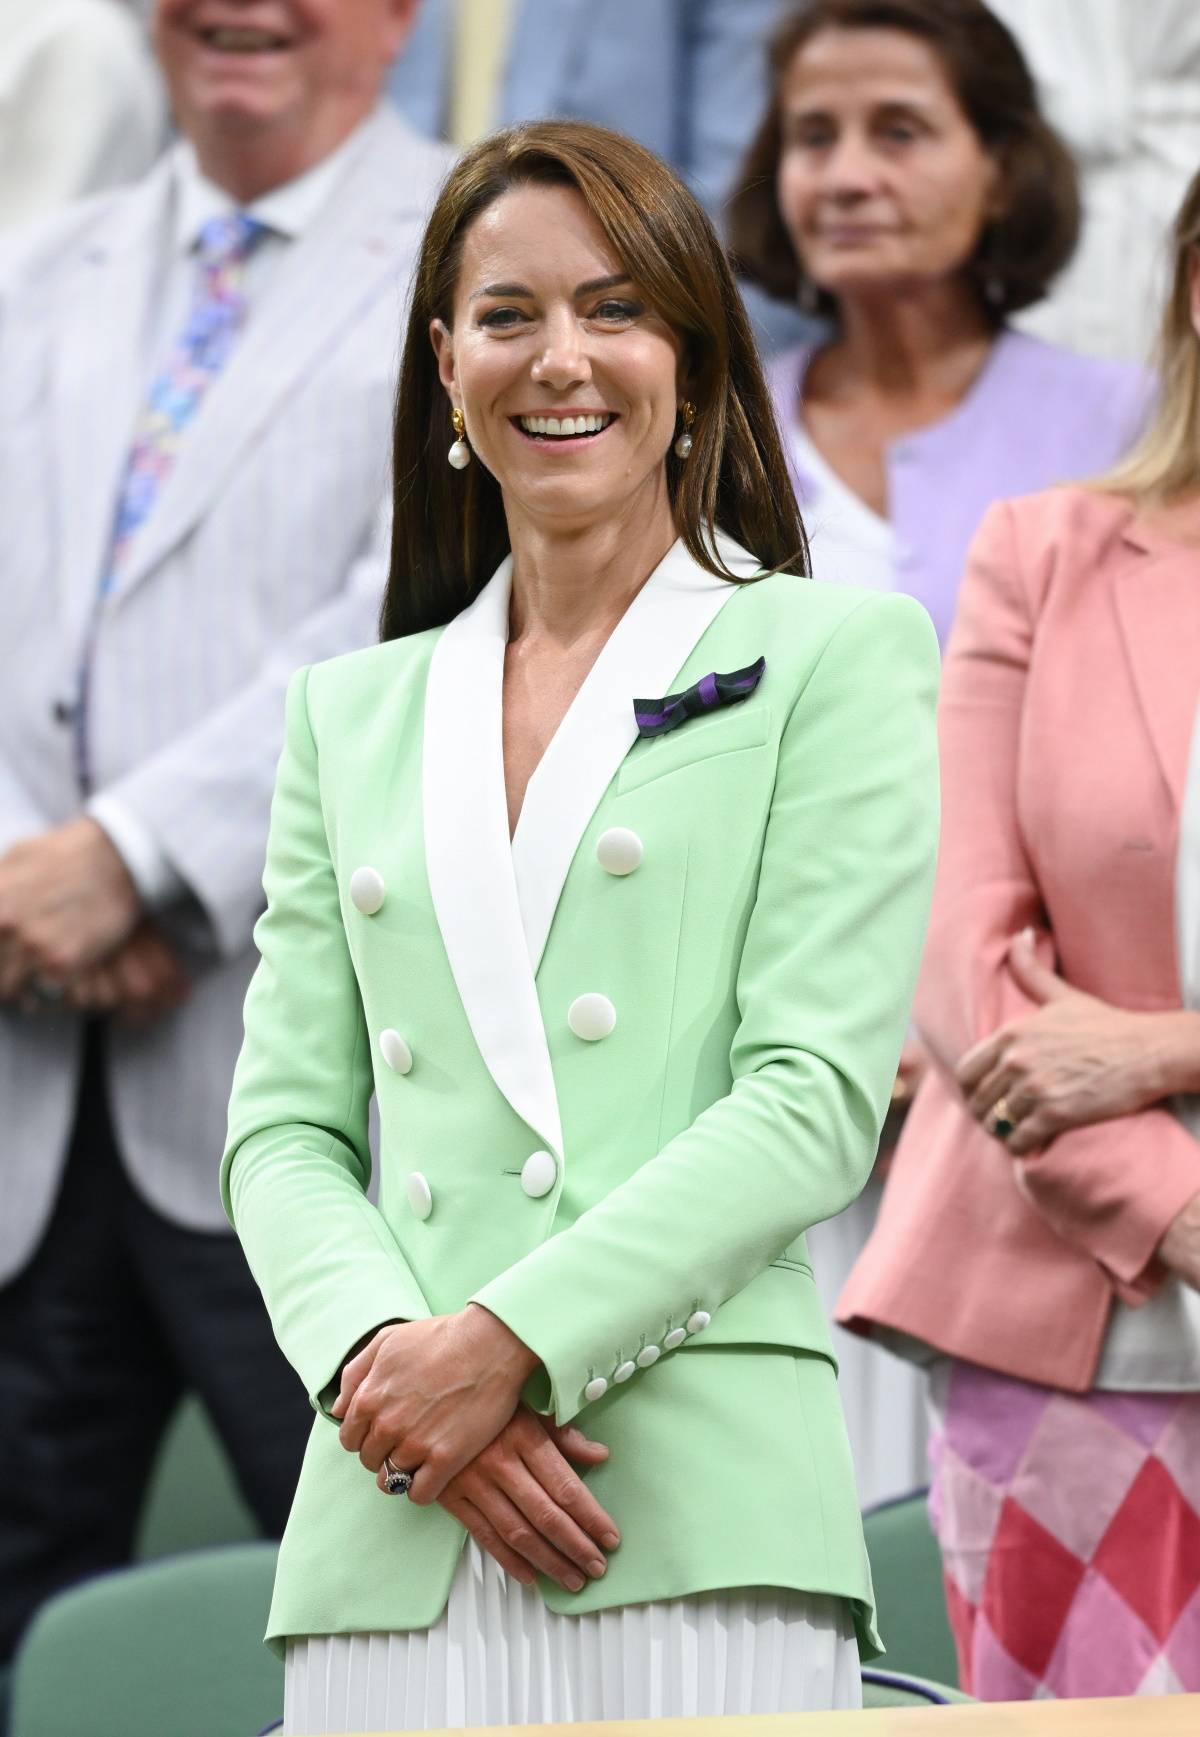 Księżna Kate w miętowej marynarce na Wimbledonie niczym Lady Di. Na Wimbledonie księżna Kate pojawiła się w miętowo-białej stylizacji do złudzenia przypominającej jeden z looków księżnej Diany. 